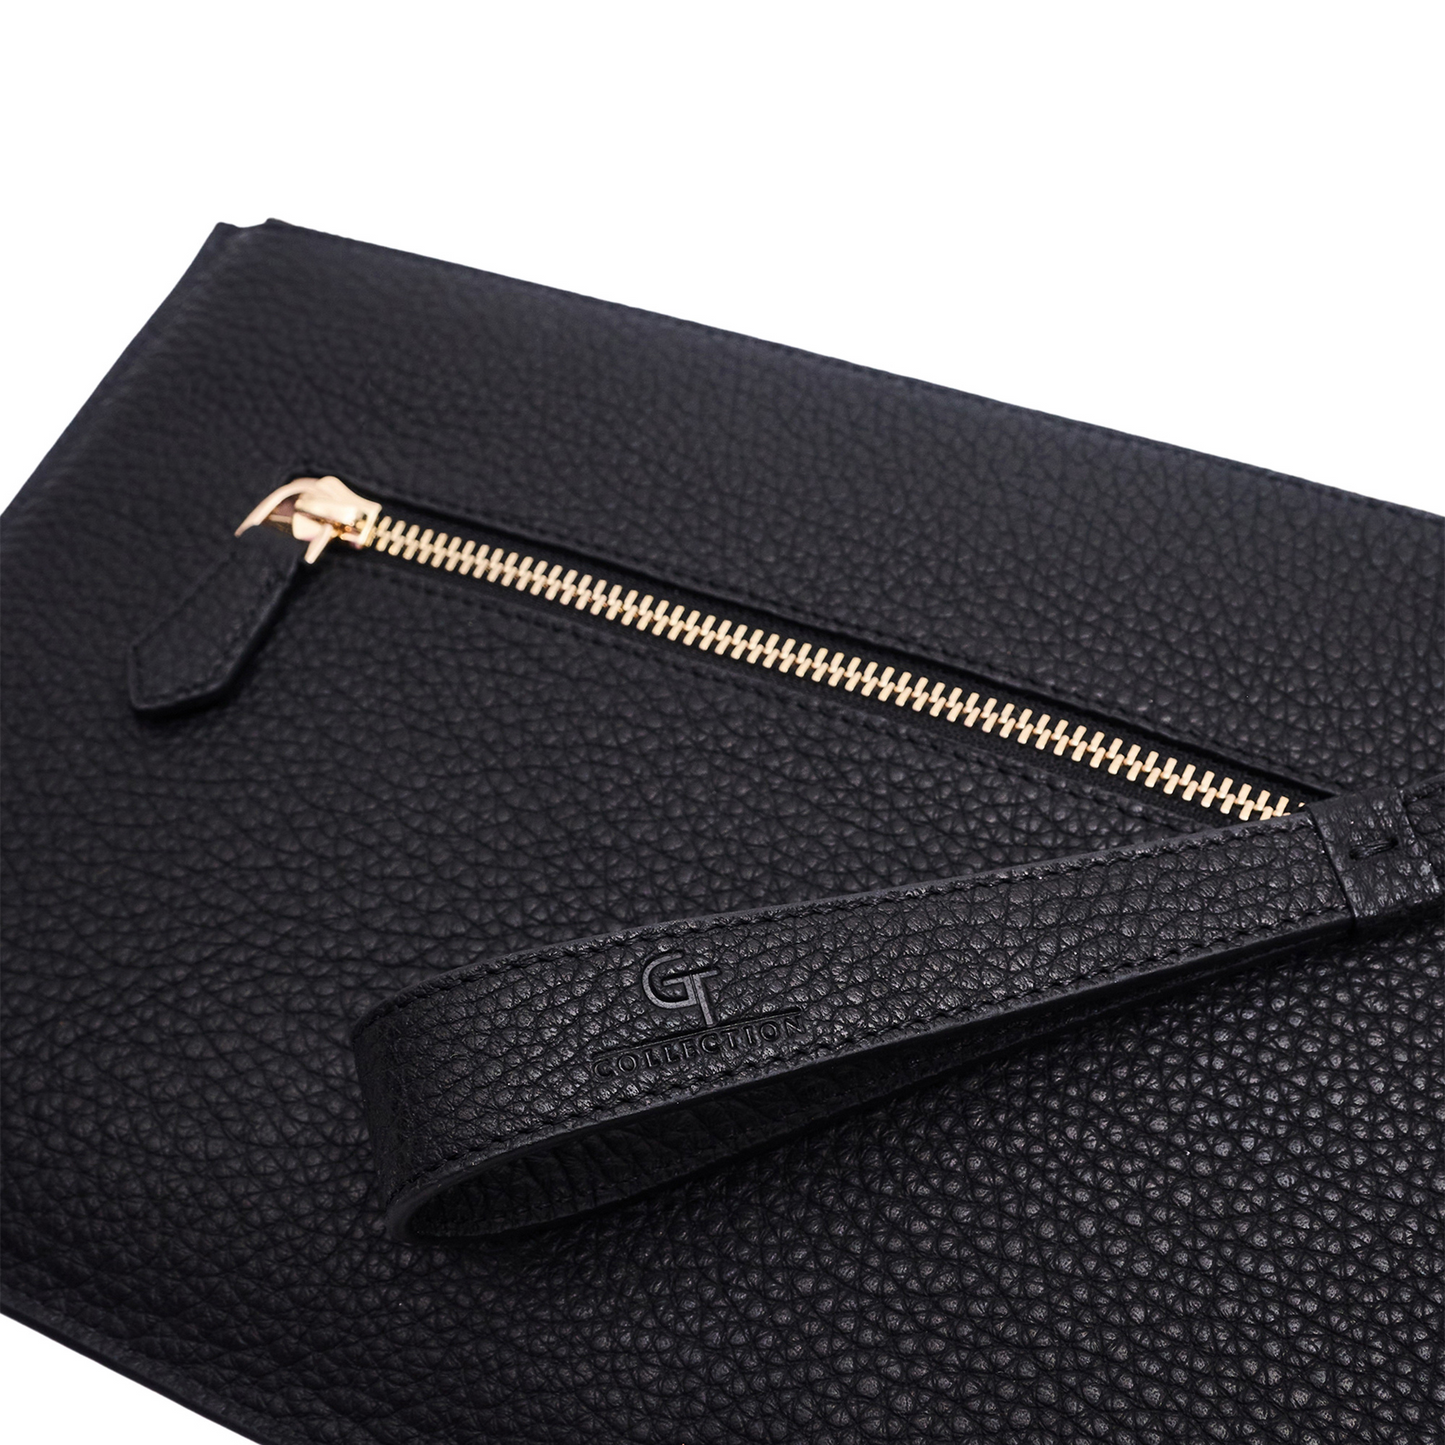 Men's Leather Clutch Bag - Black with golden details